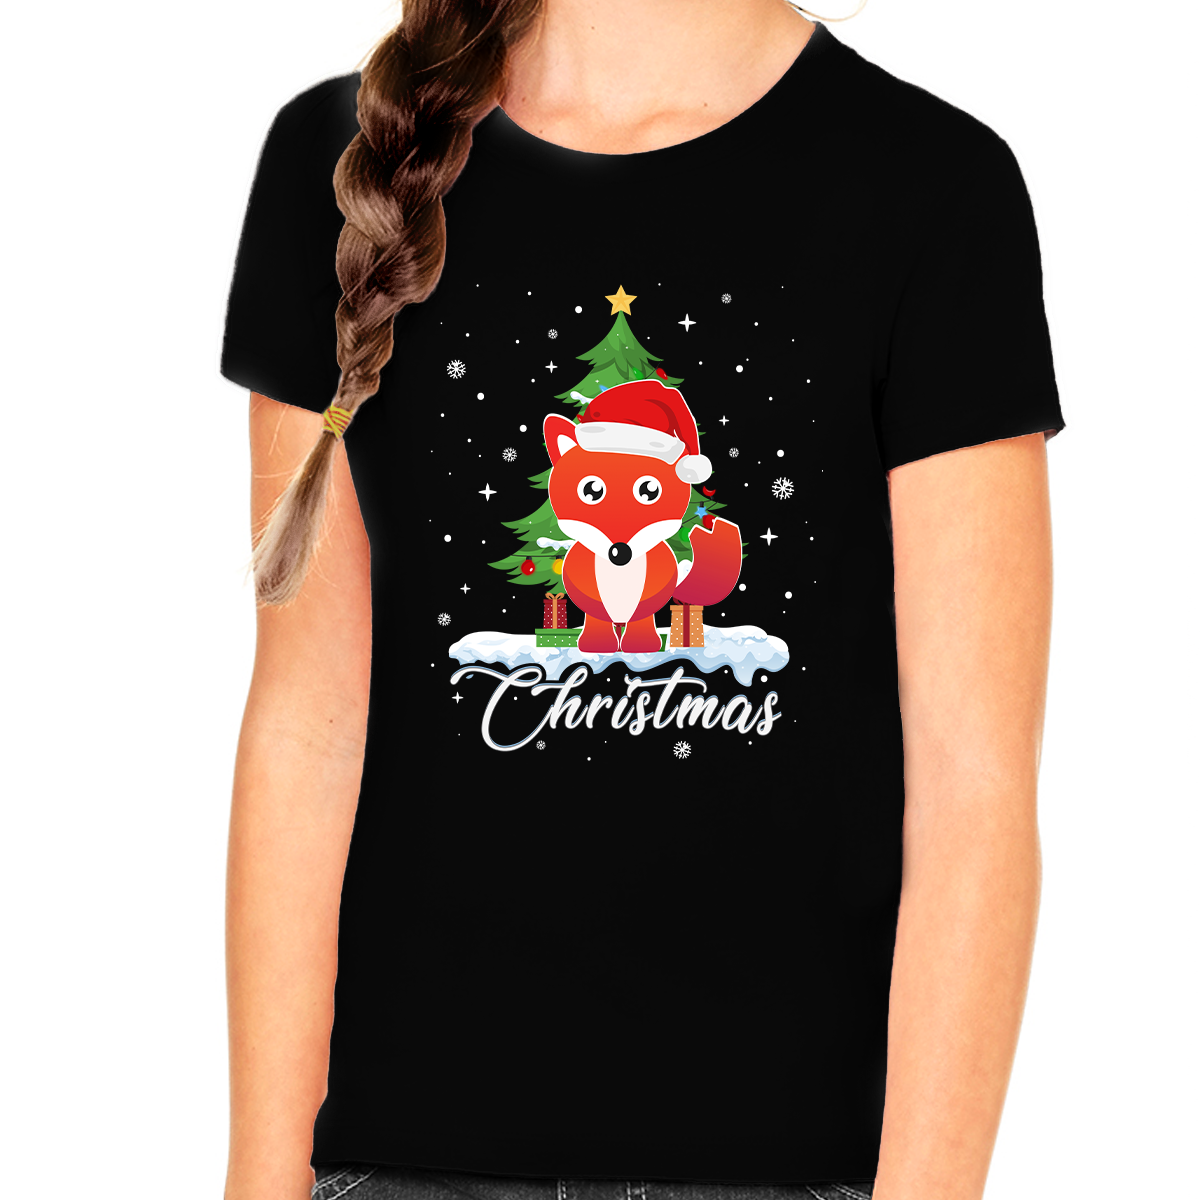 Girls Christmas Shirt Christmas Outfits for Girls Cute Fox Santa Christmas Shirts for Kids